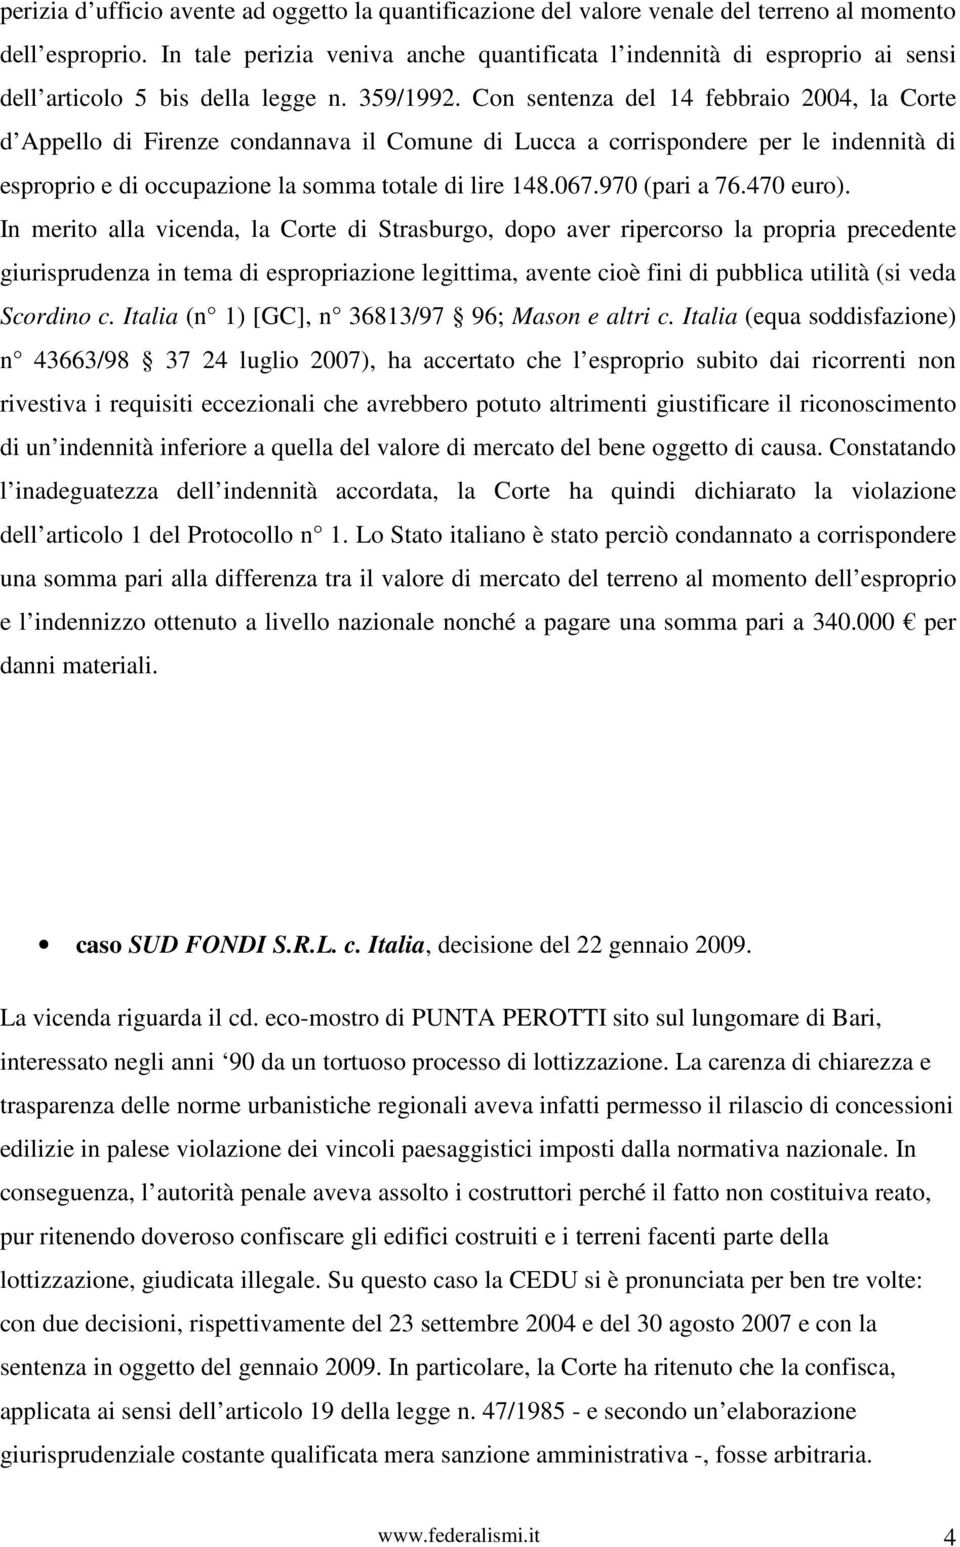 Con sentenza del 14 febbraio 2004, la Corte d Appello di Firenze condannava il Comune di Lucca a corrispondere per le indennità di esproprio e di occupazione la somma totale di lire 148.067.